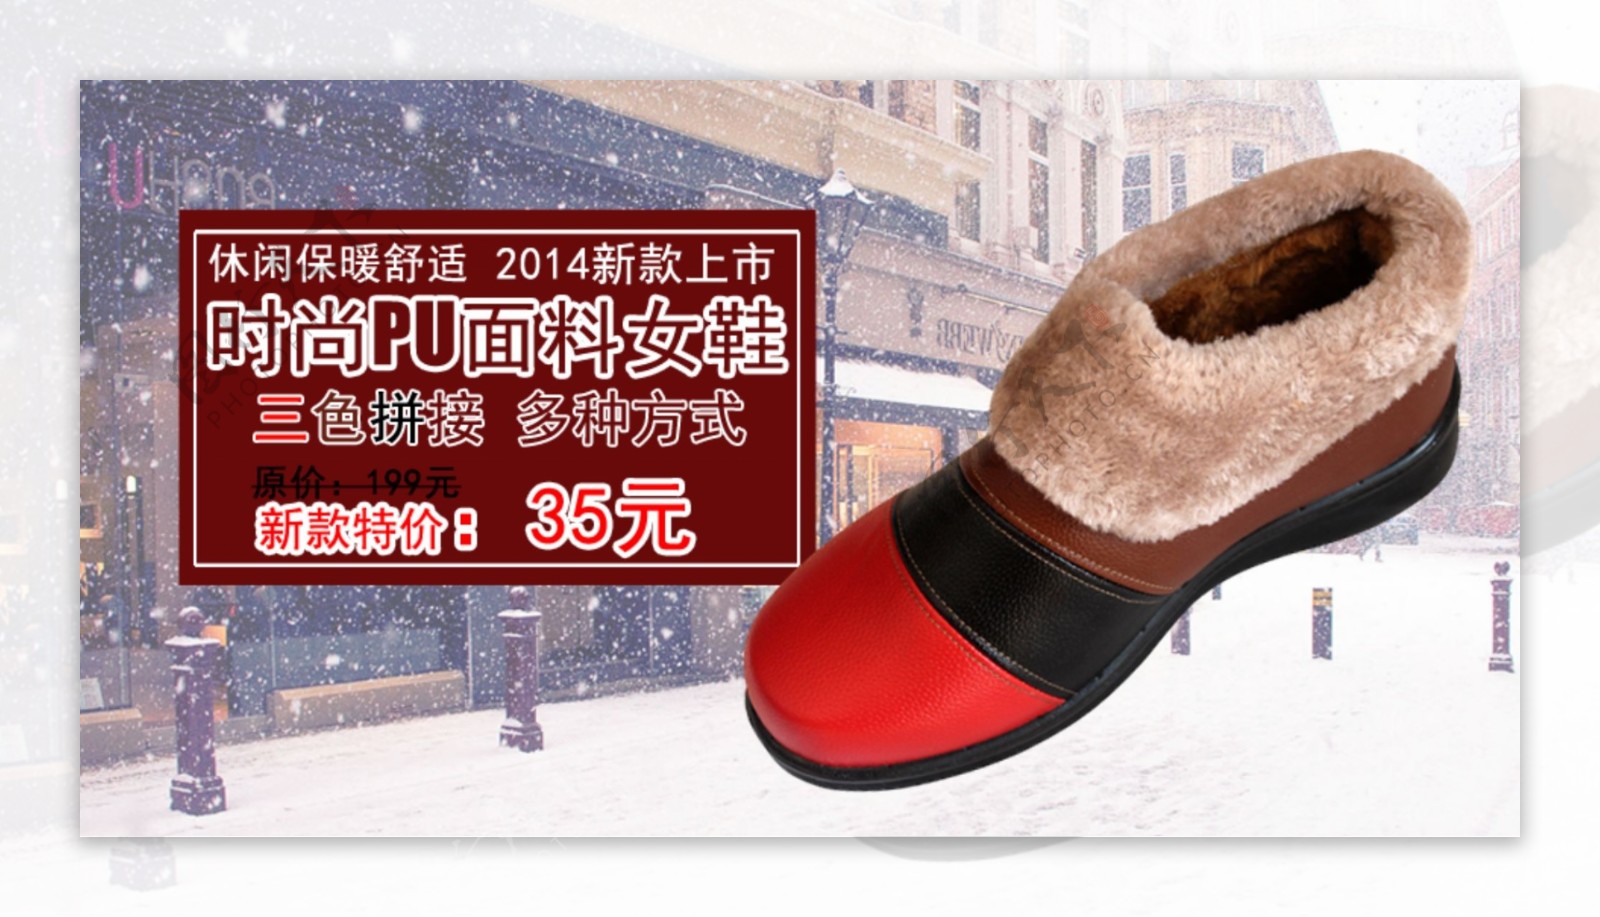 冬季PU女鞋促销